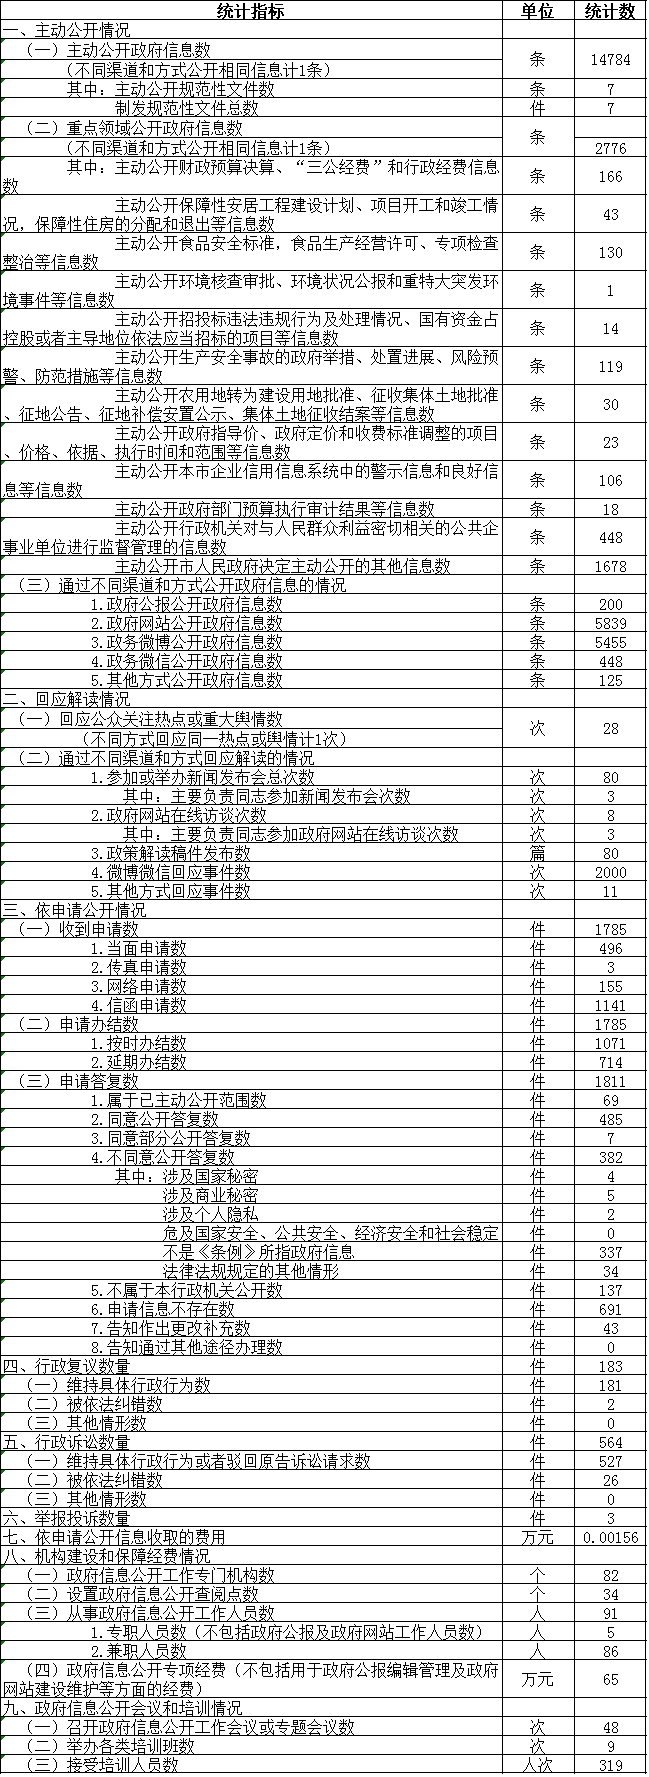 北京市海淀区人民政府信息公开情况统计表